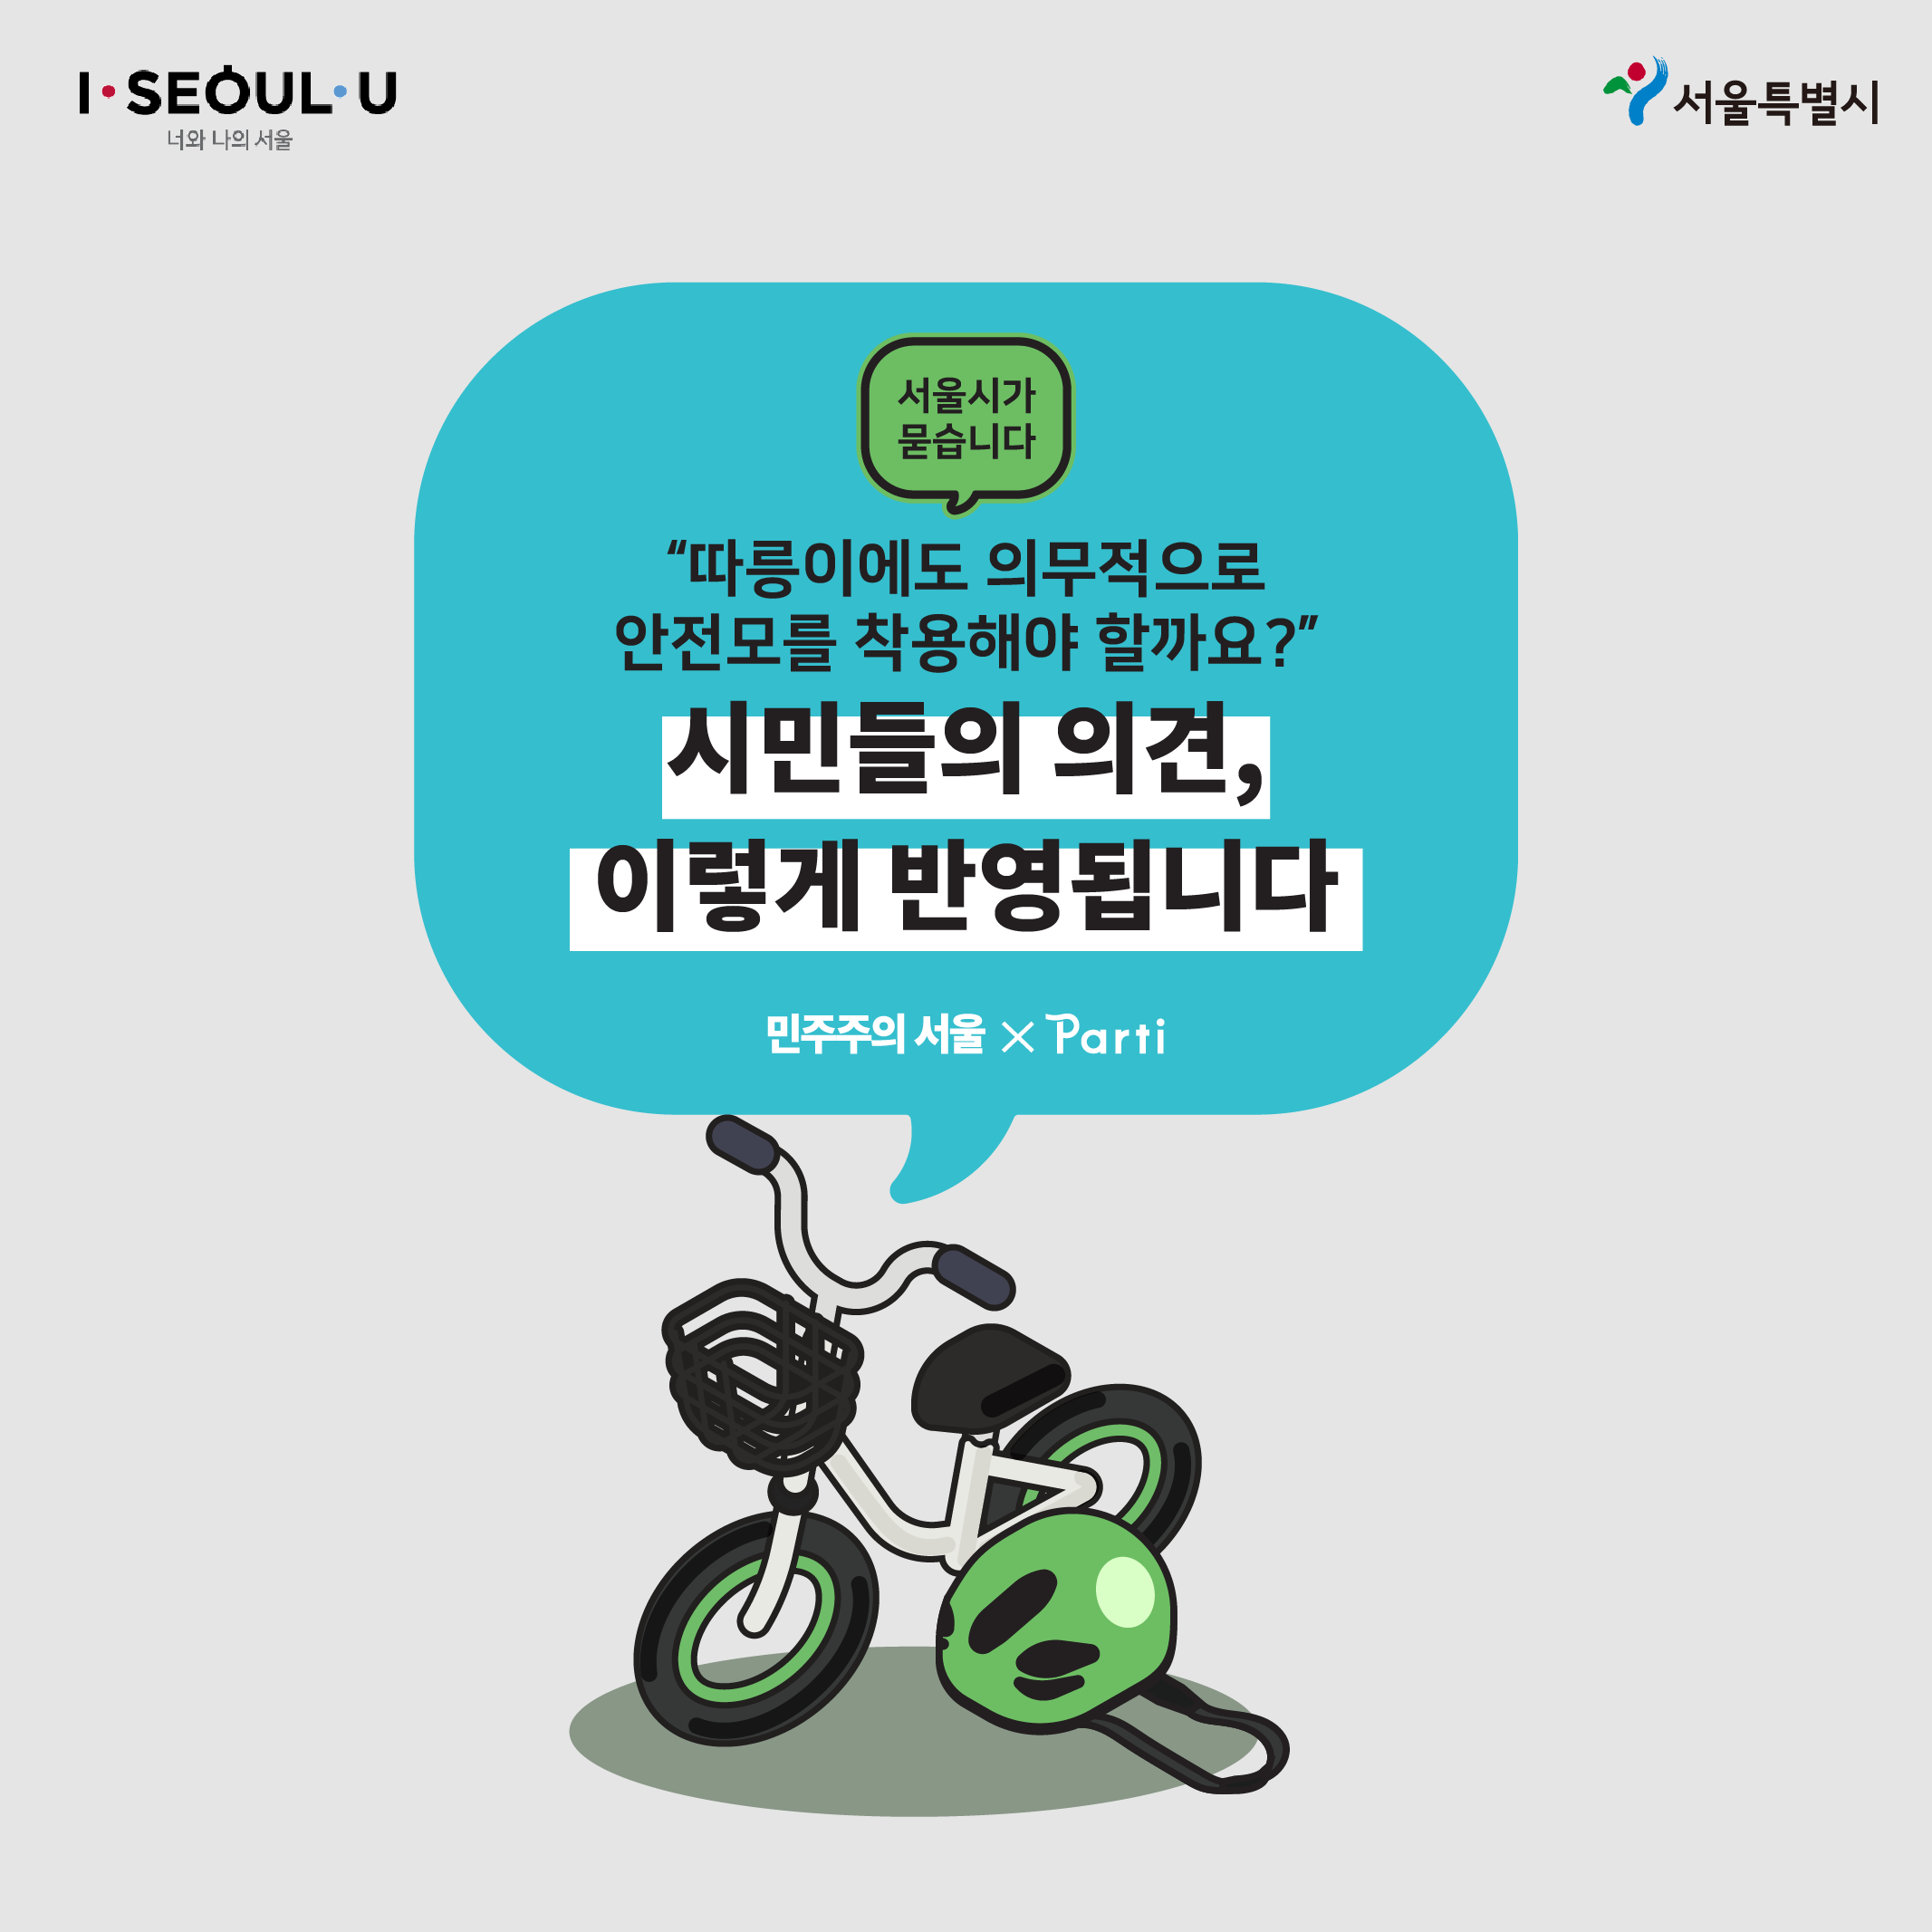 서울시가 묻습니다 '따릉이에도 의무적으로 안전모를 착용해야 할까요?'시민들의 의견은 이렇게 반영됩니다.